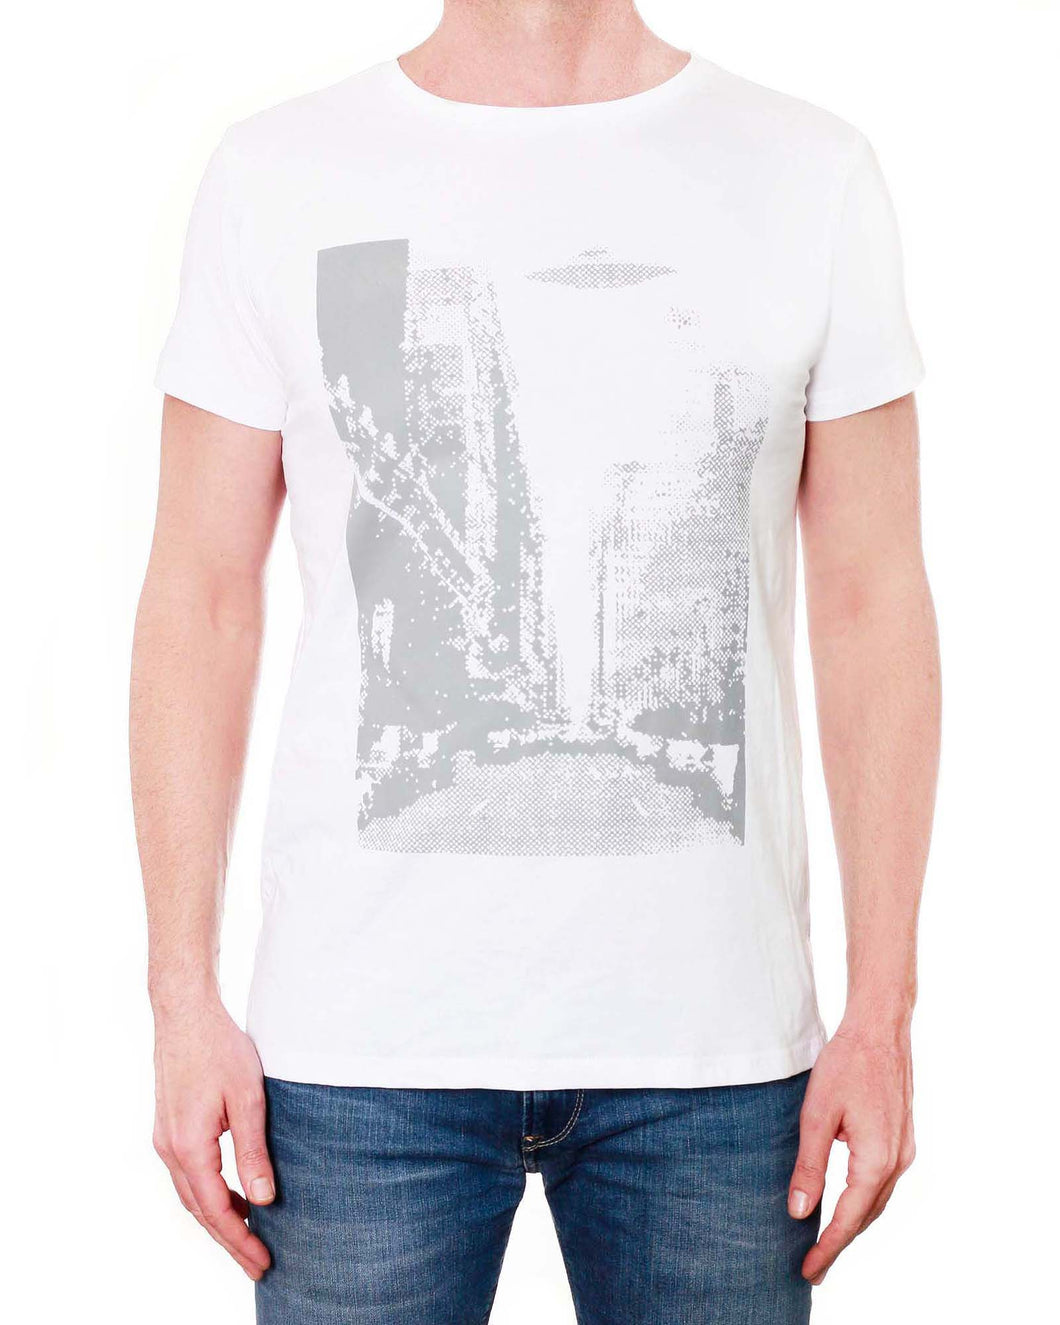 NY UFO Print - Men's T-Shirt - Round Neck (White)